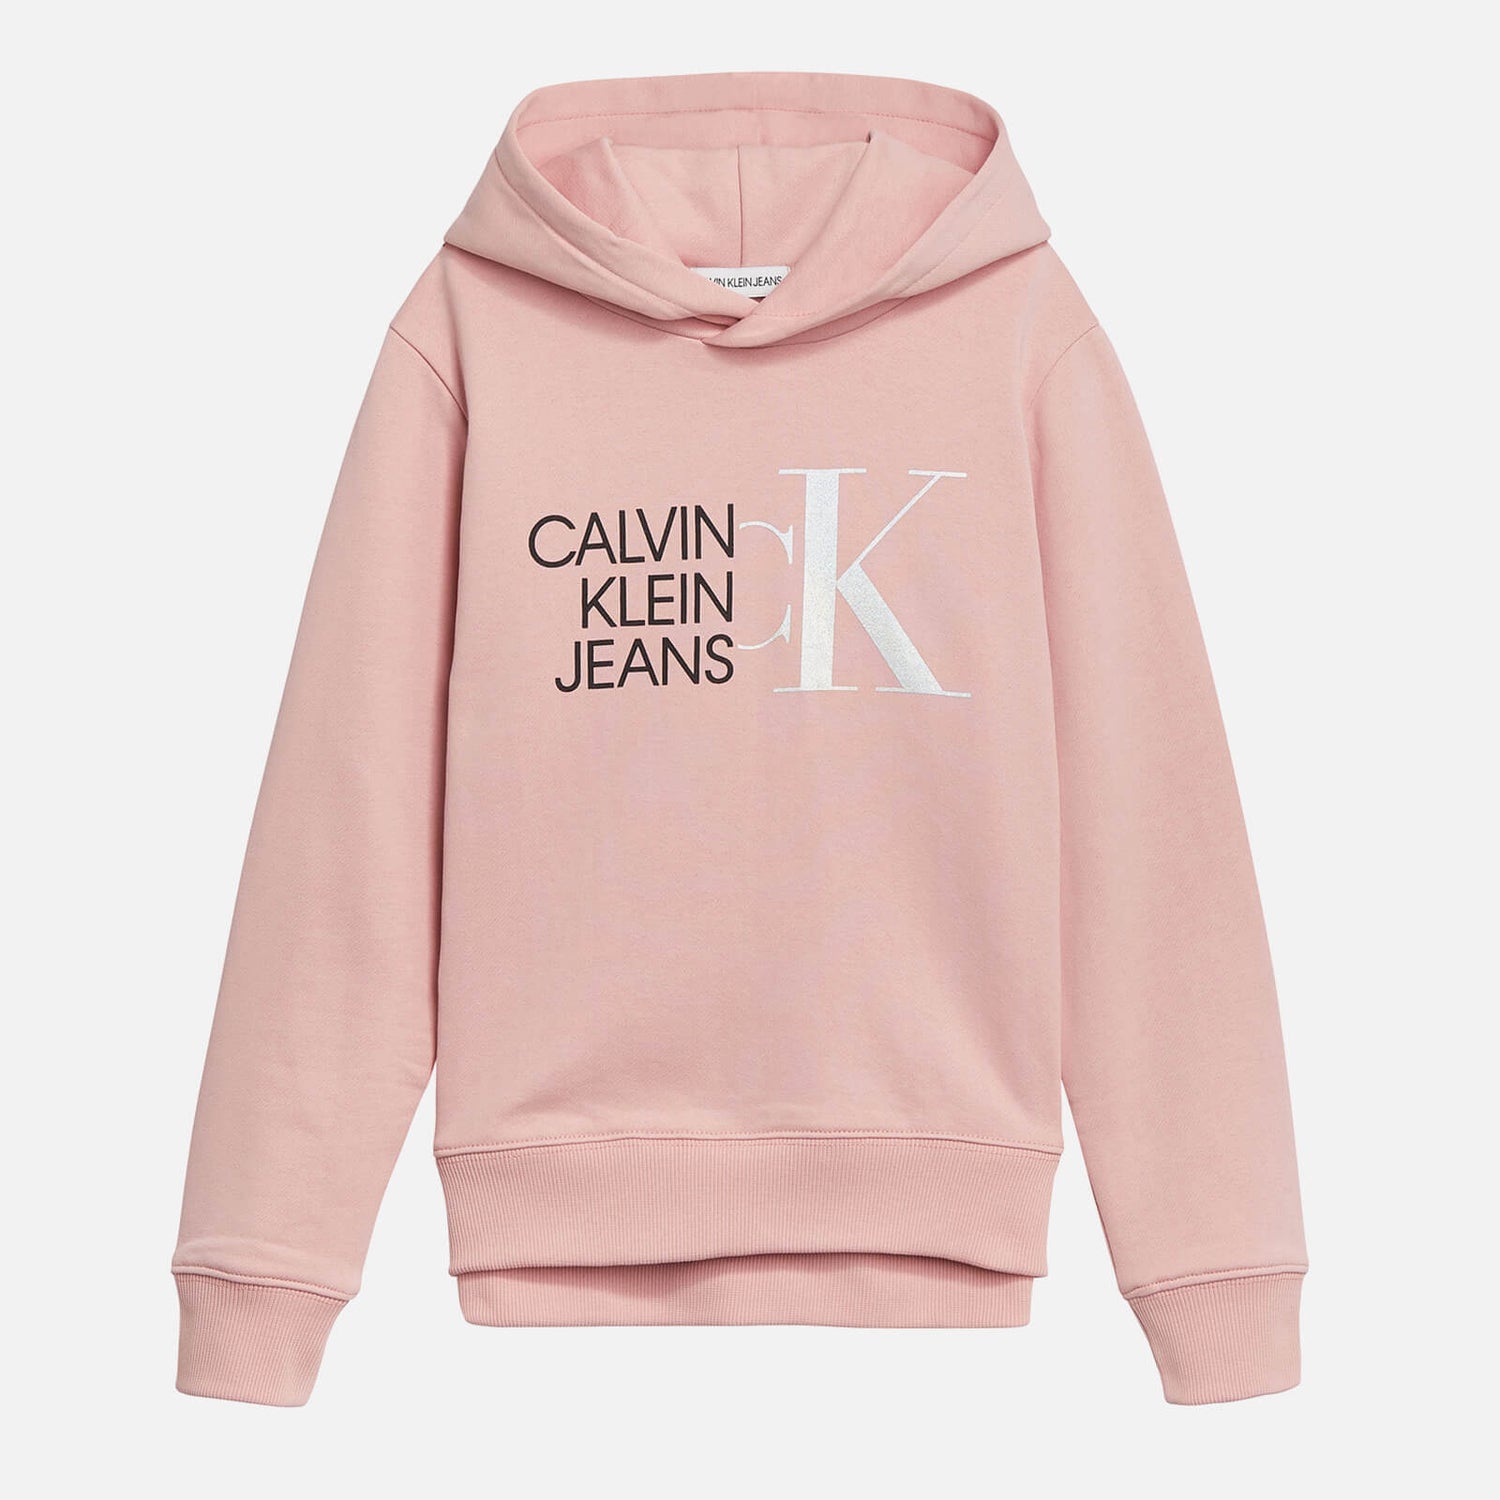 Calvin Klein Jeans Girl's Hybrid Logo Hoodie - Sand Rose